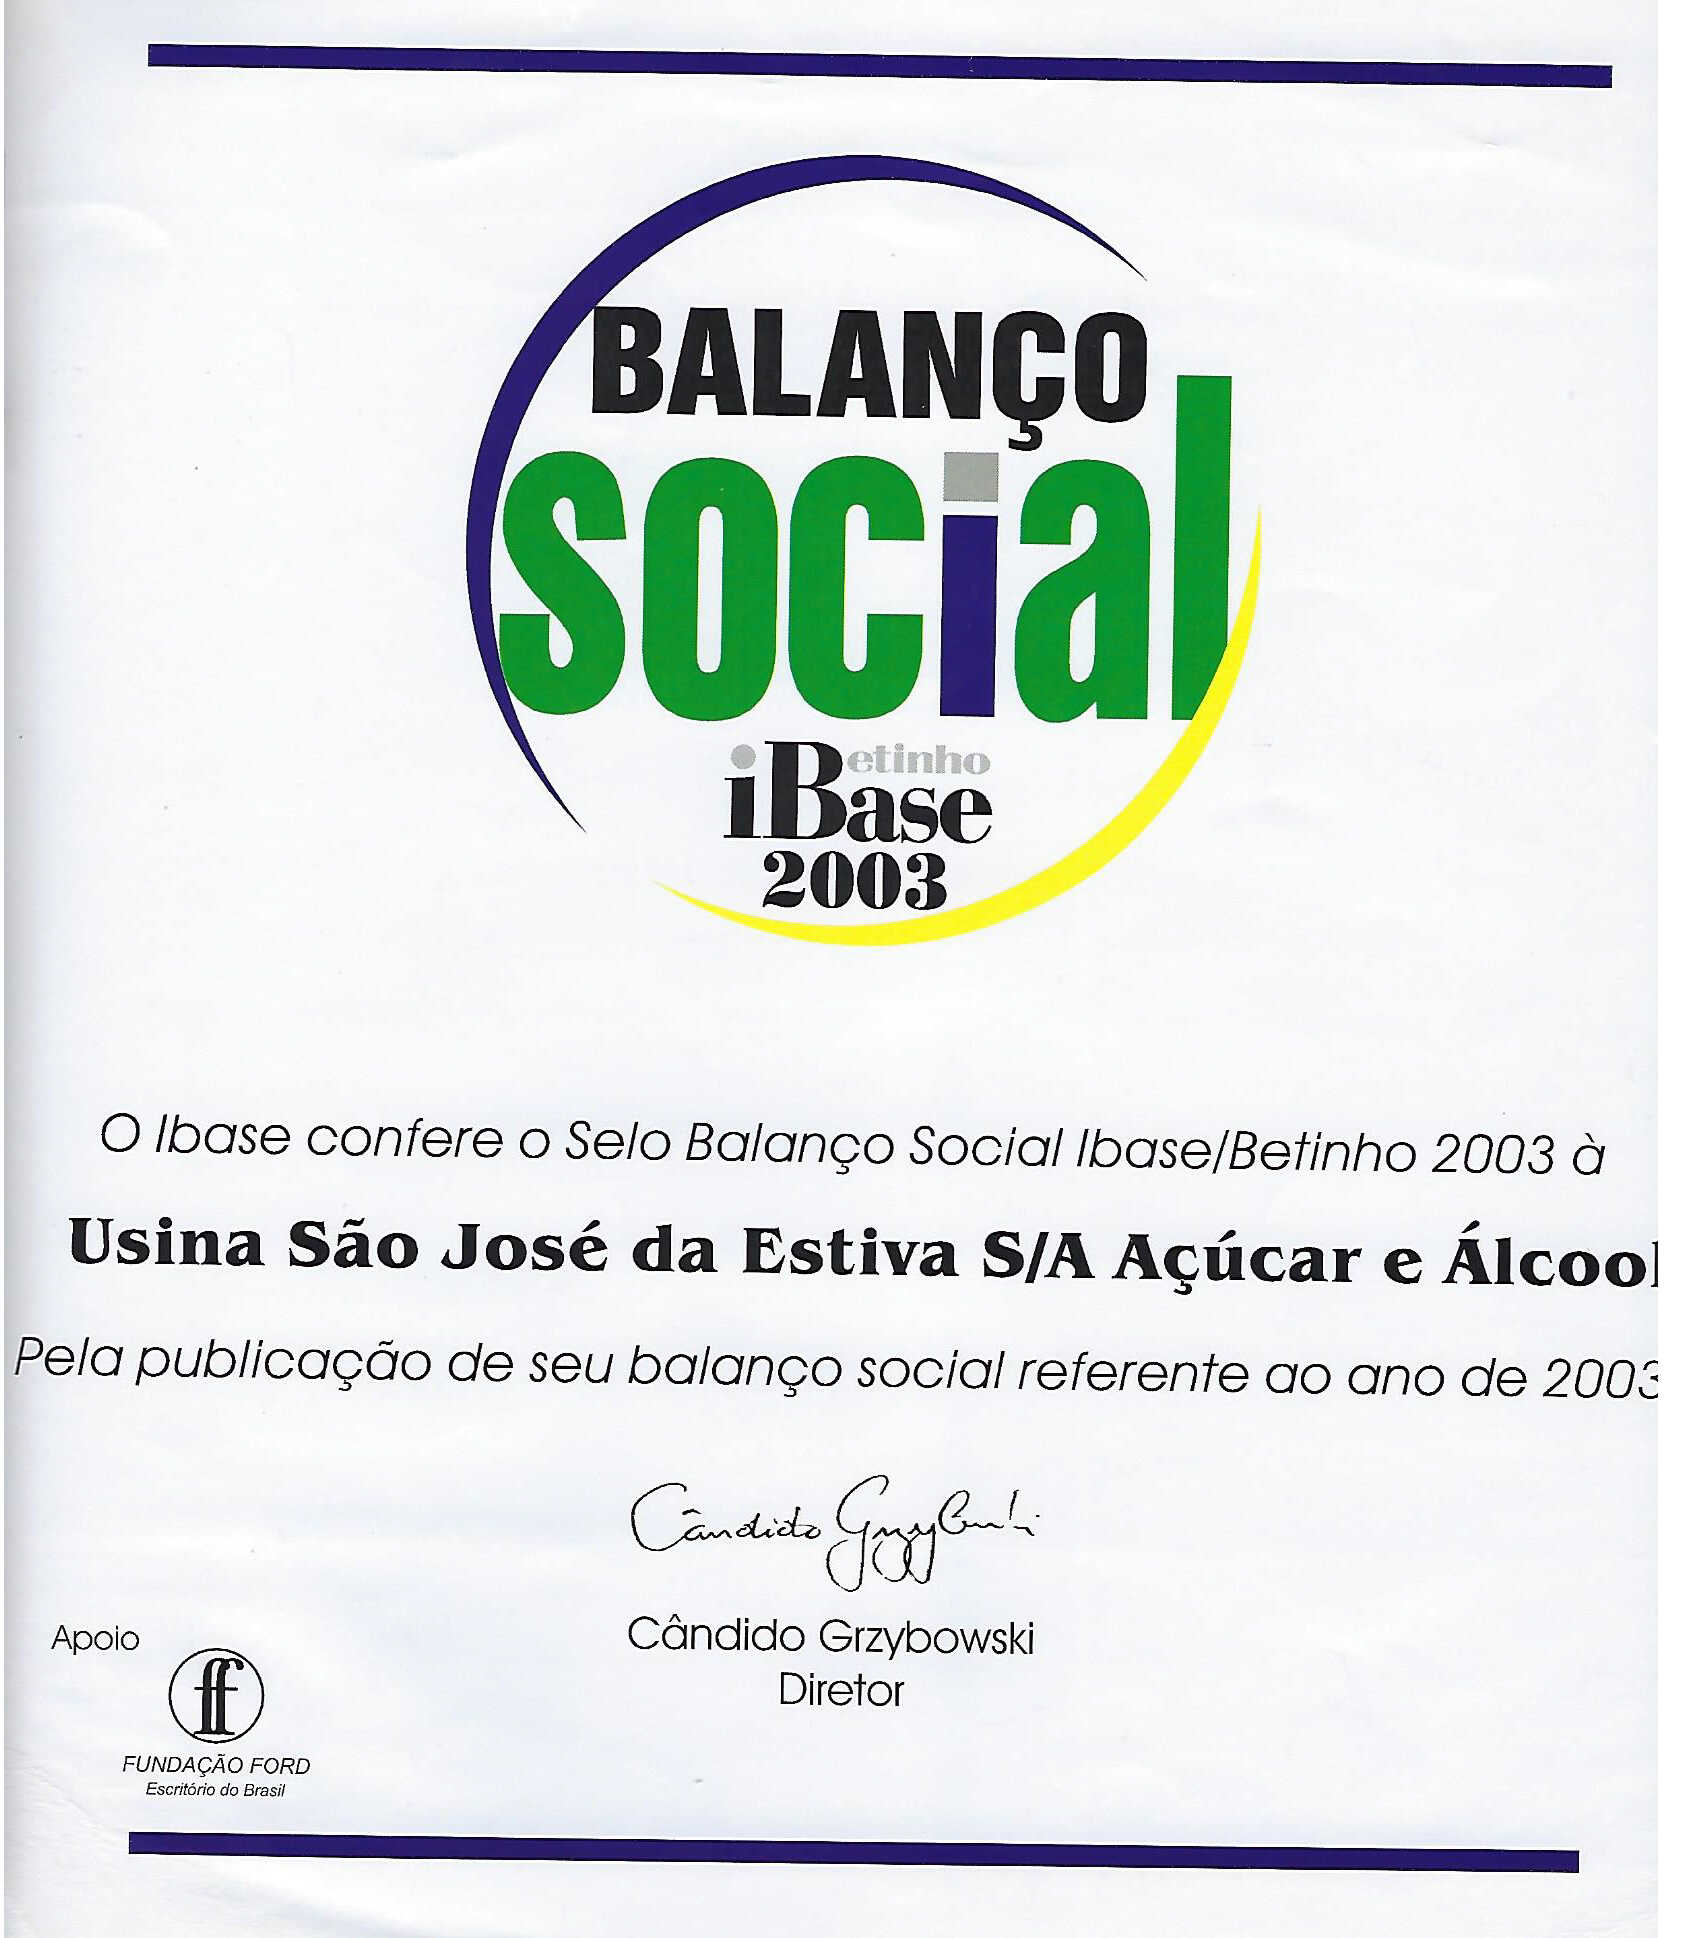 BalancoIBASE2003.jpg (1.05 MB)